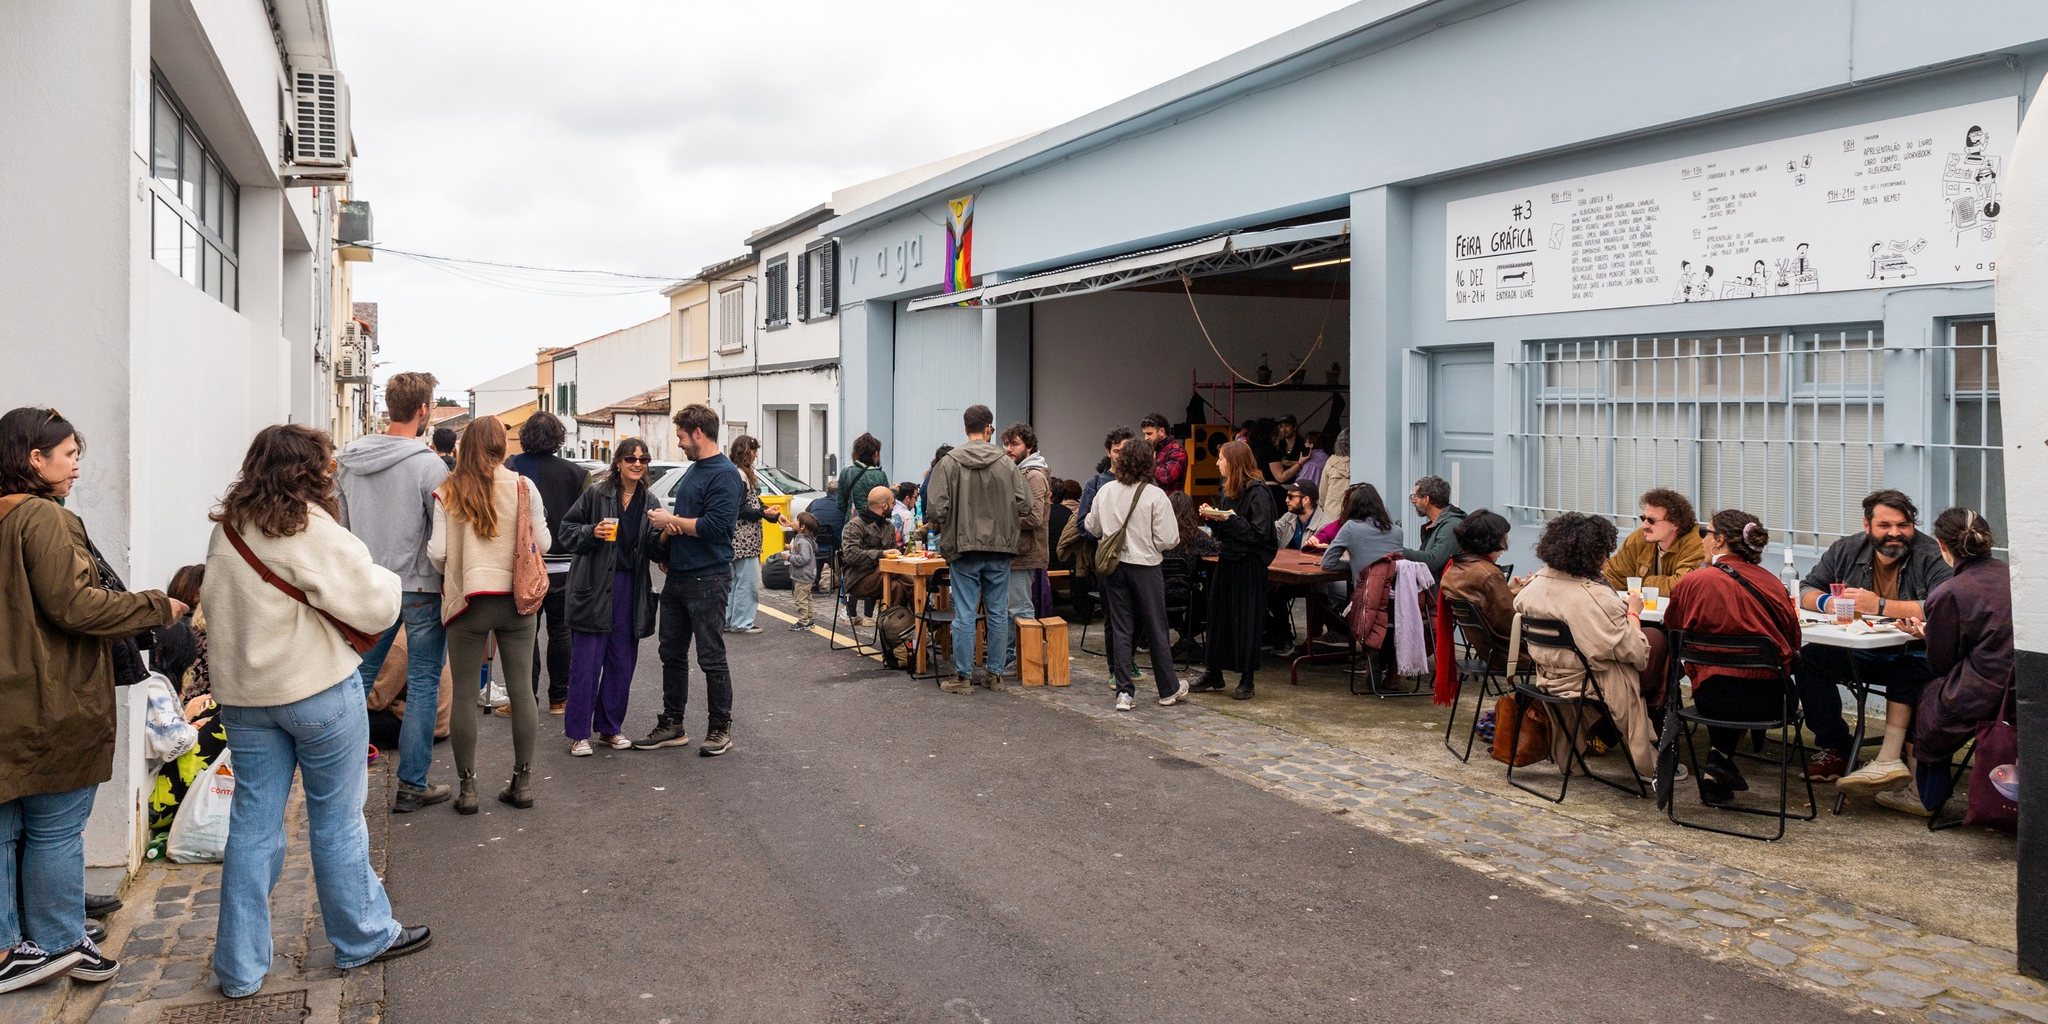 A abertura do espaço vaga, em 2020, tem agitado a movida no Bairro das Laranjeiras, em Ponta Delgada